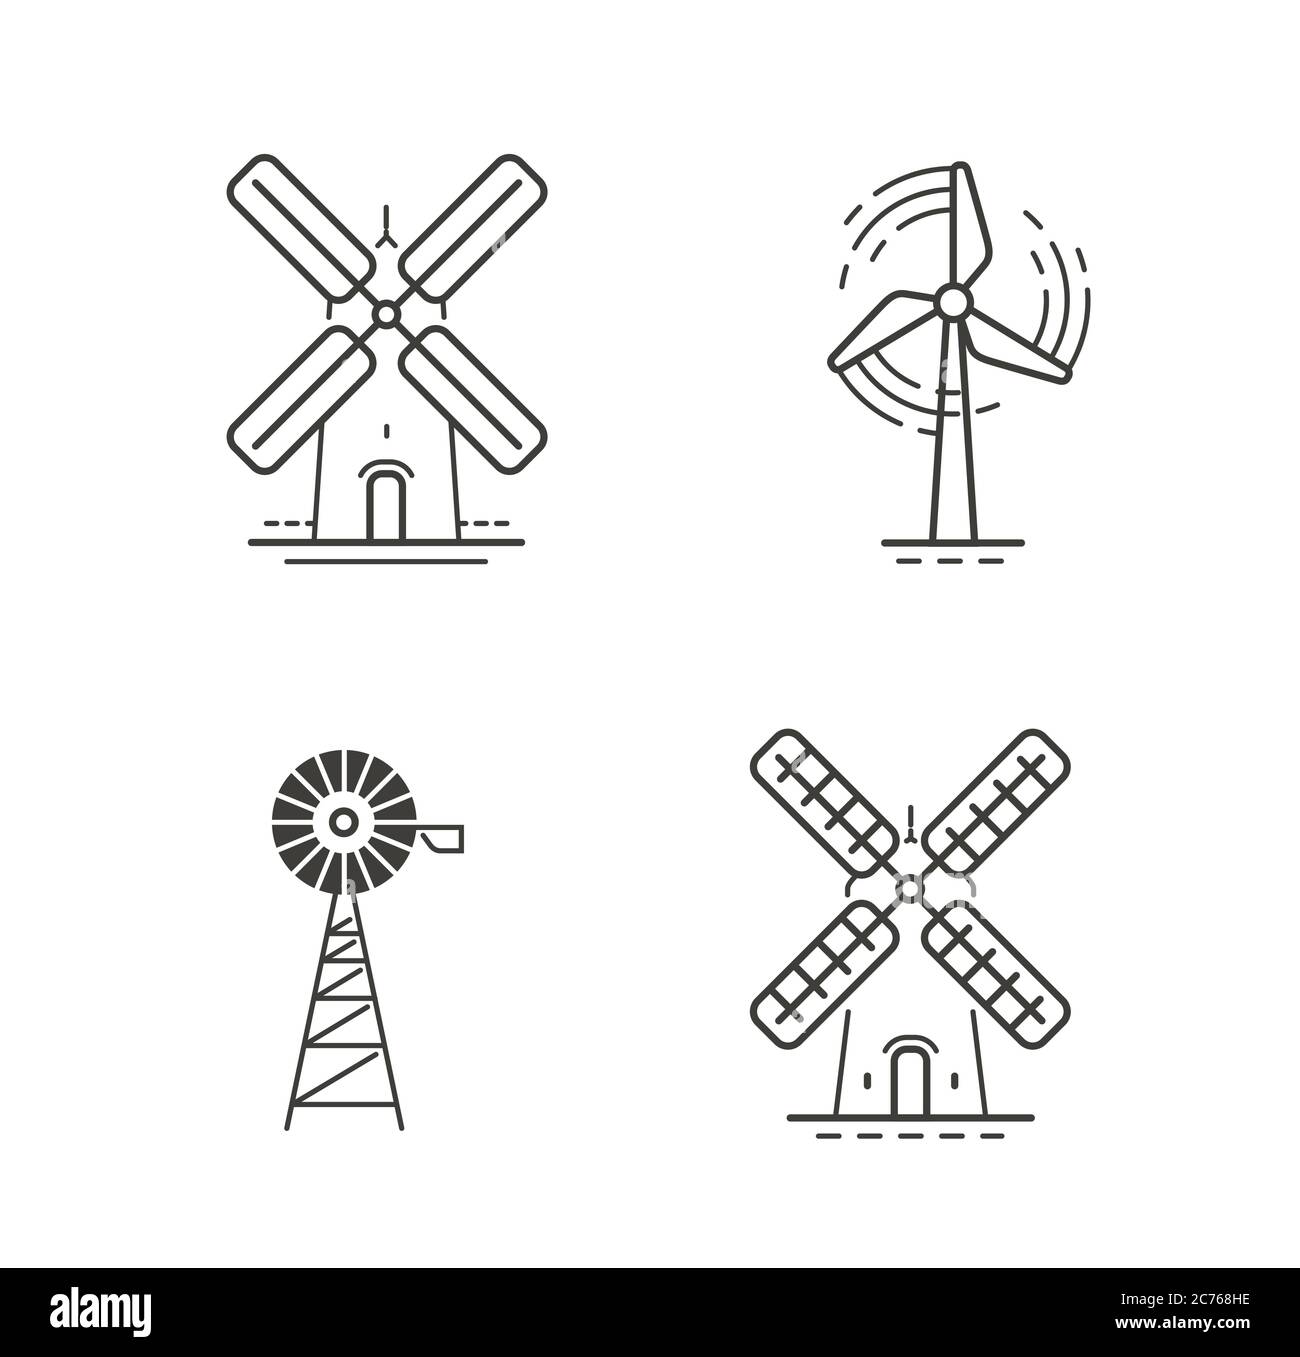 Symbole oder Symbole festlegen. Erneuerbare Energien, Windmühle, Industriekonzept Stock Vektor